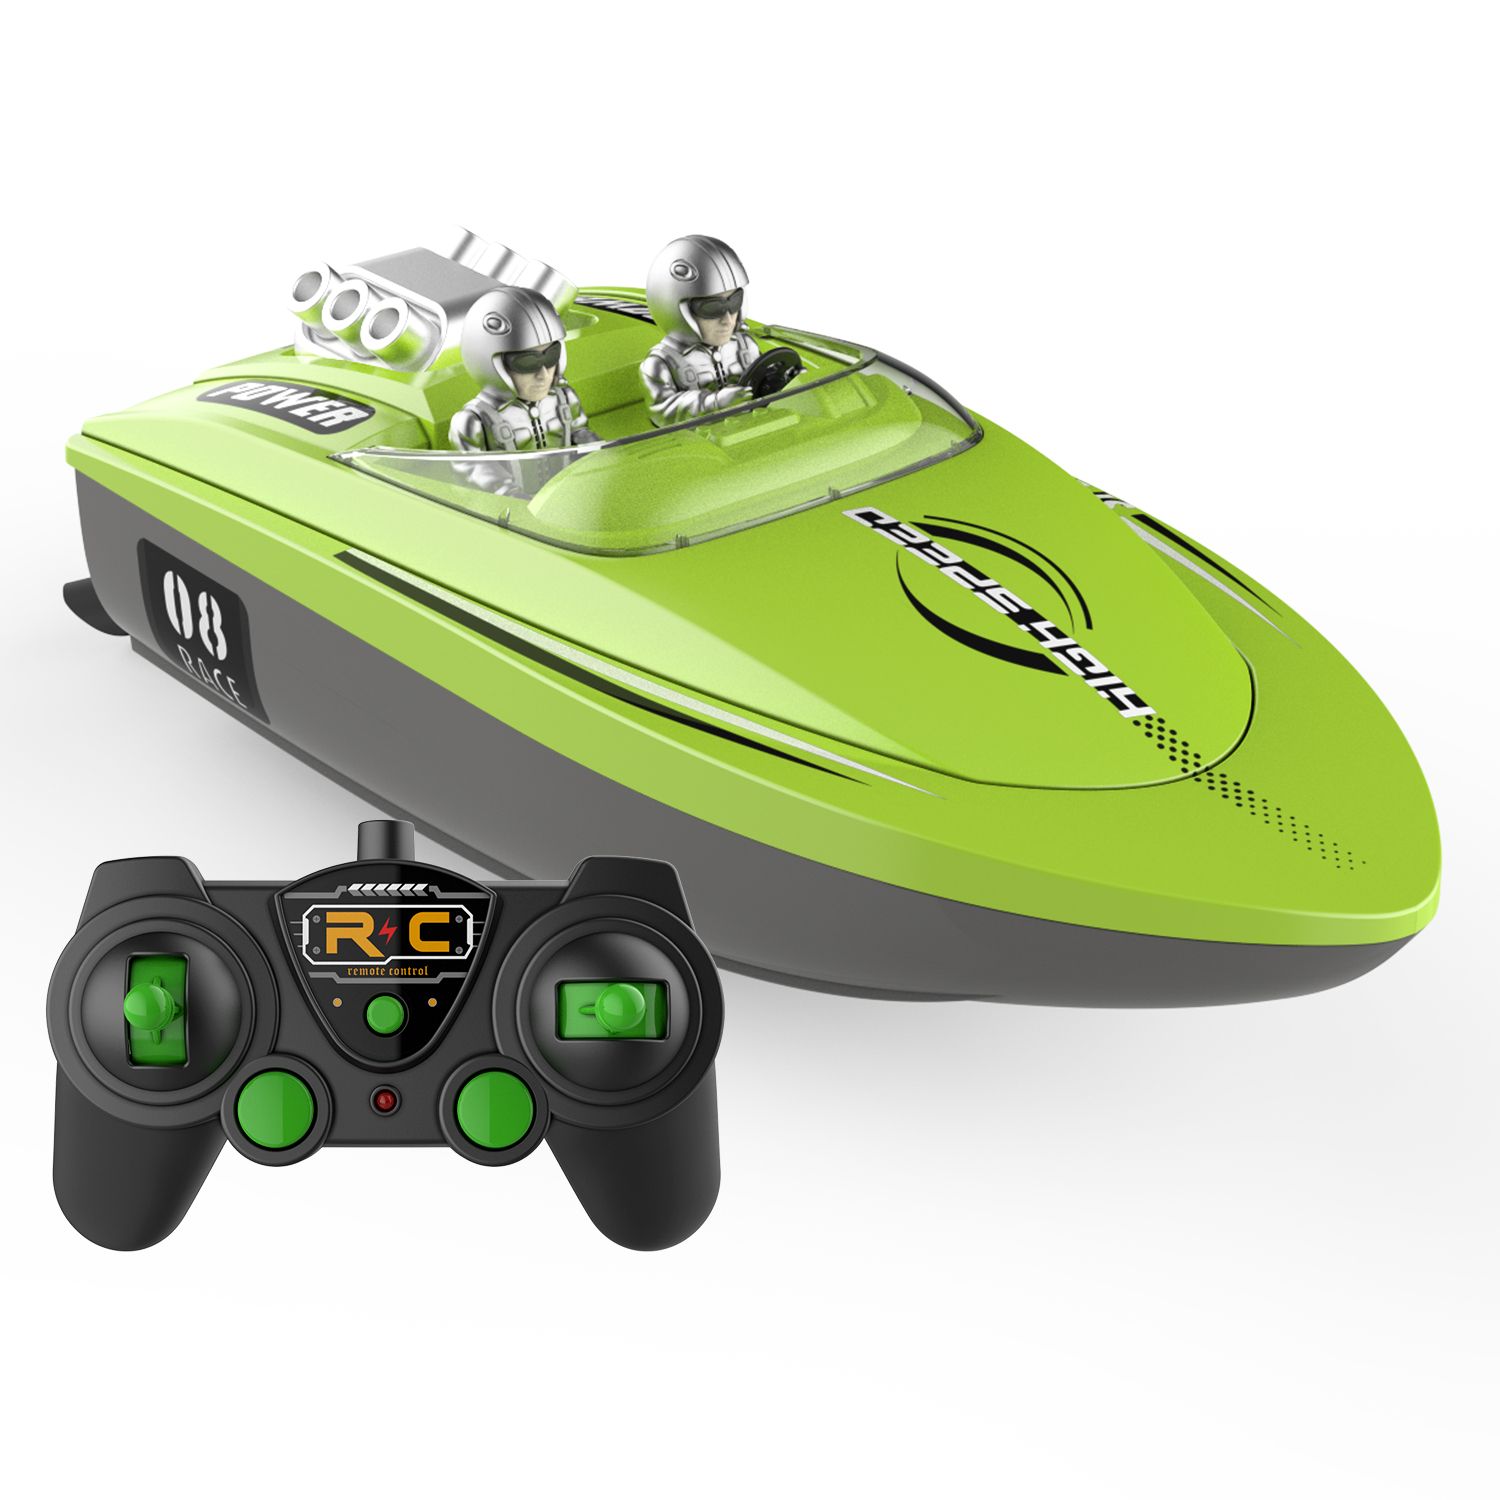 Barco de salto de alta velocidad impermeable personalizado, barco de carreras de control remoto inalámbrico de agua fría, juguetes para niños, regalo